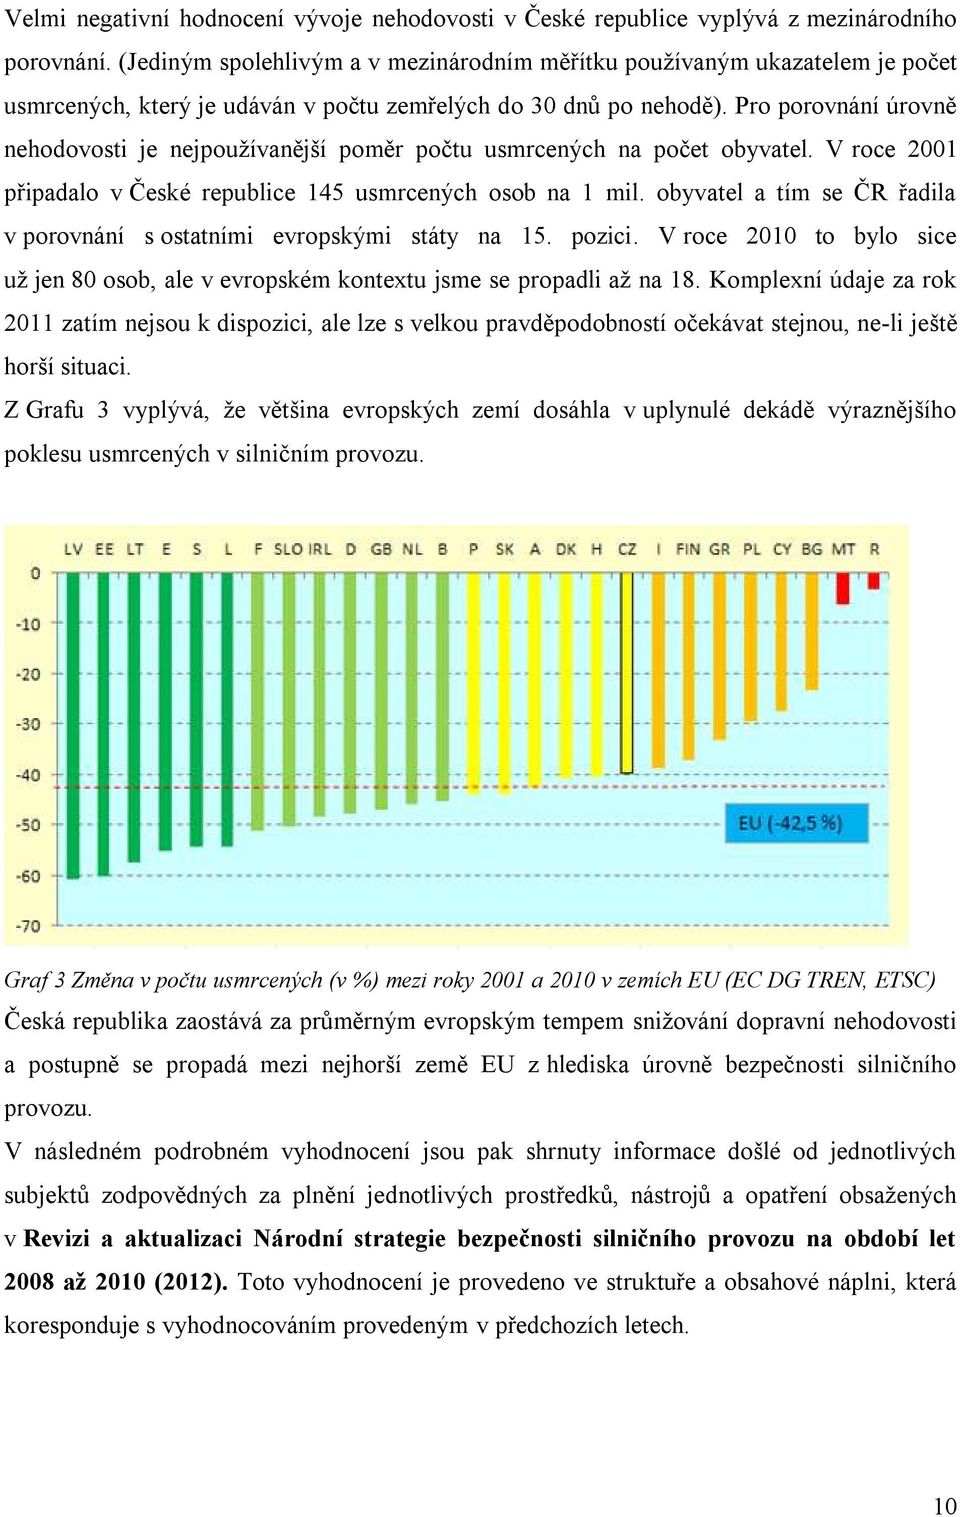 Pro porovnání úrovně nehodovosti je nejpoužívanější poměr počtu usmrcených na počet obyvatel. V roce 2001 připadalo v České republice 145 usmrcených osob na 1 mil.